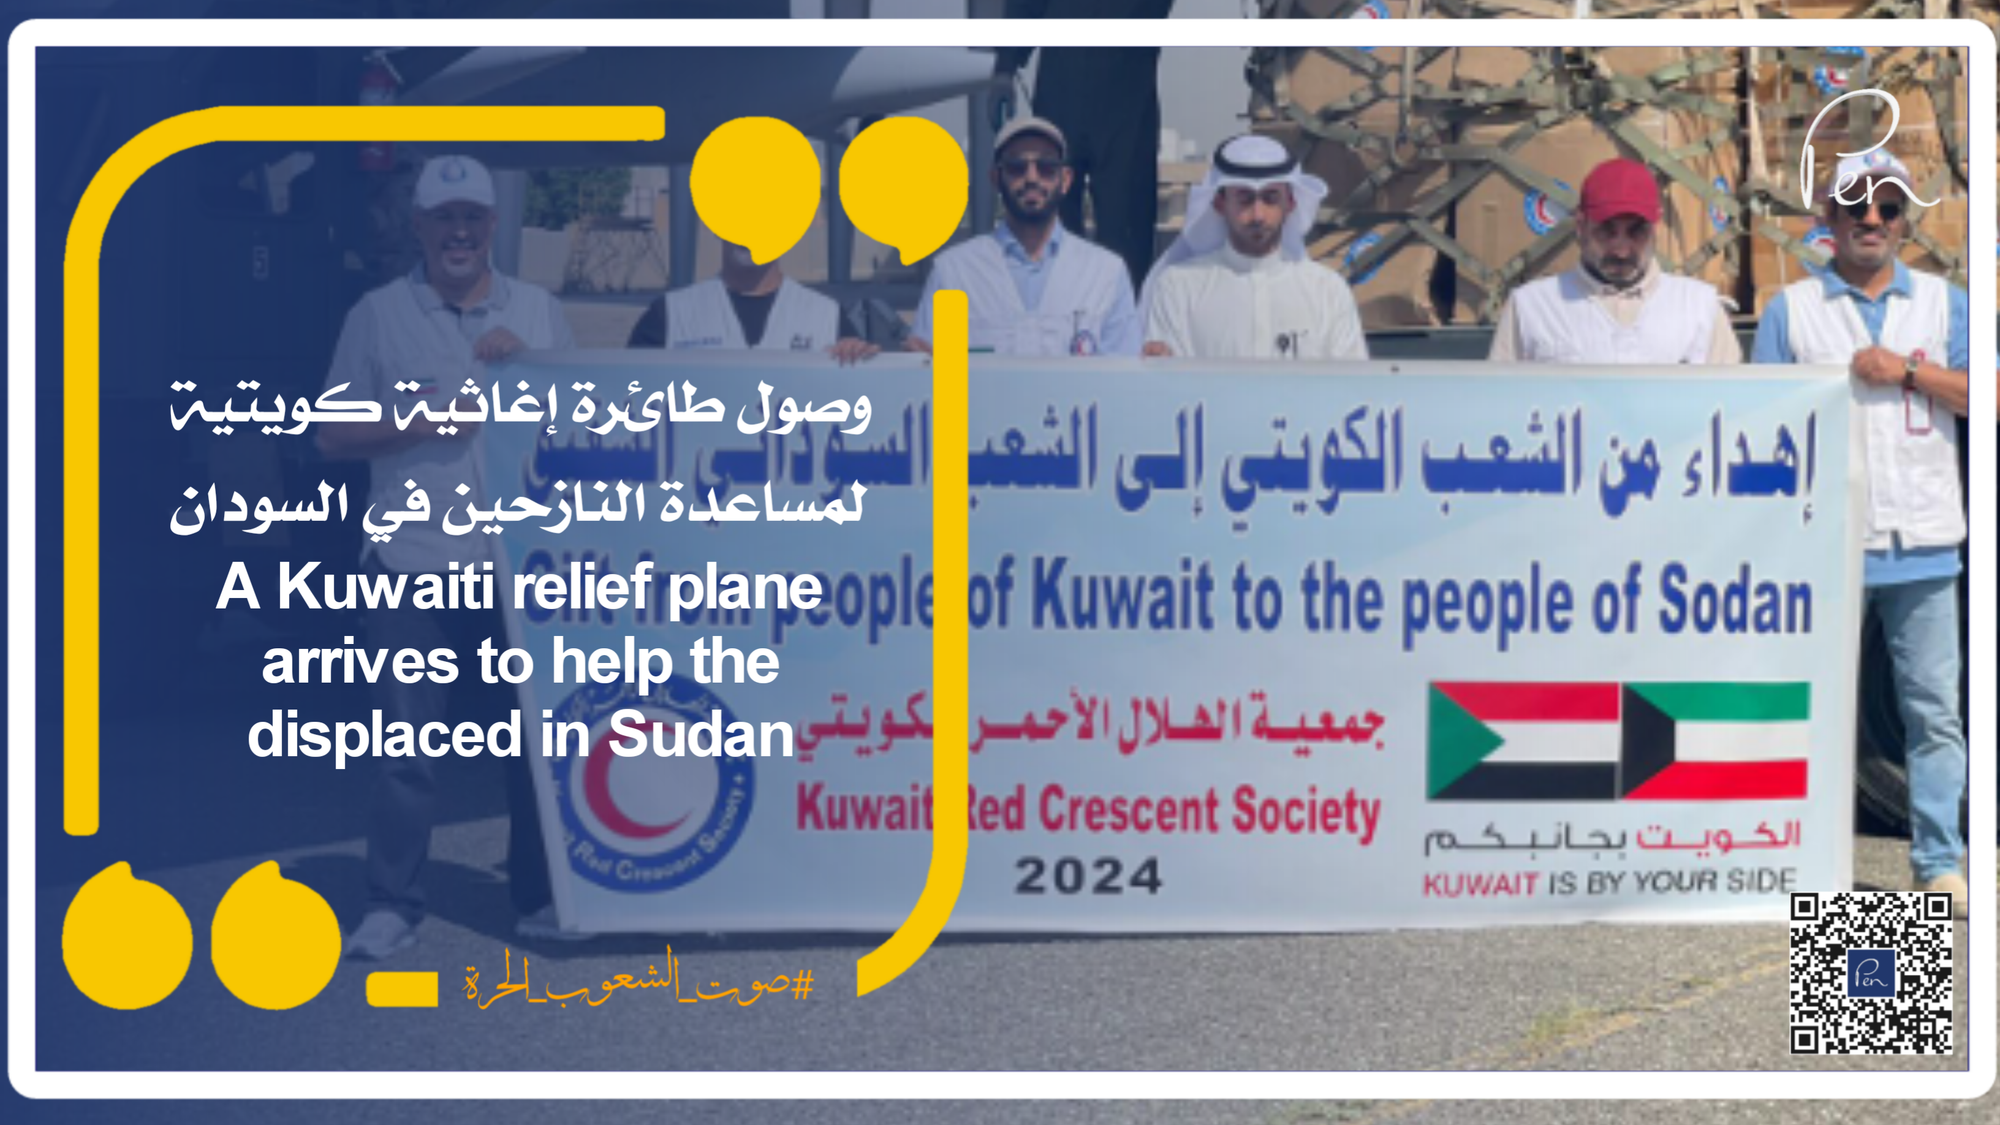 وصول طائرة إغاثية كويتية لمساعدة النازحين في السودان